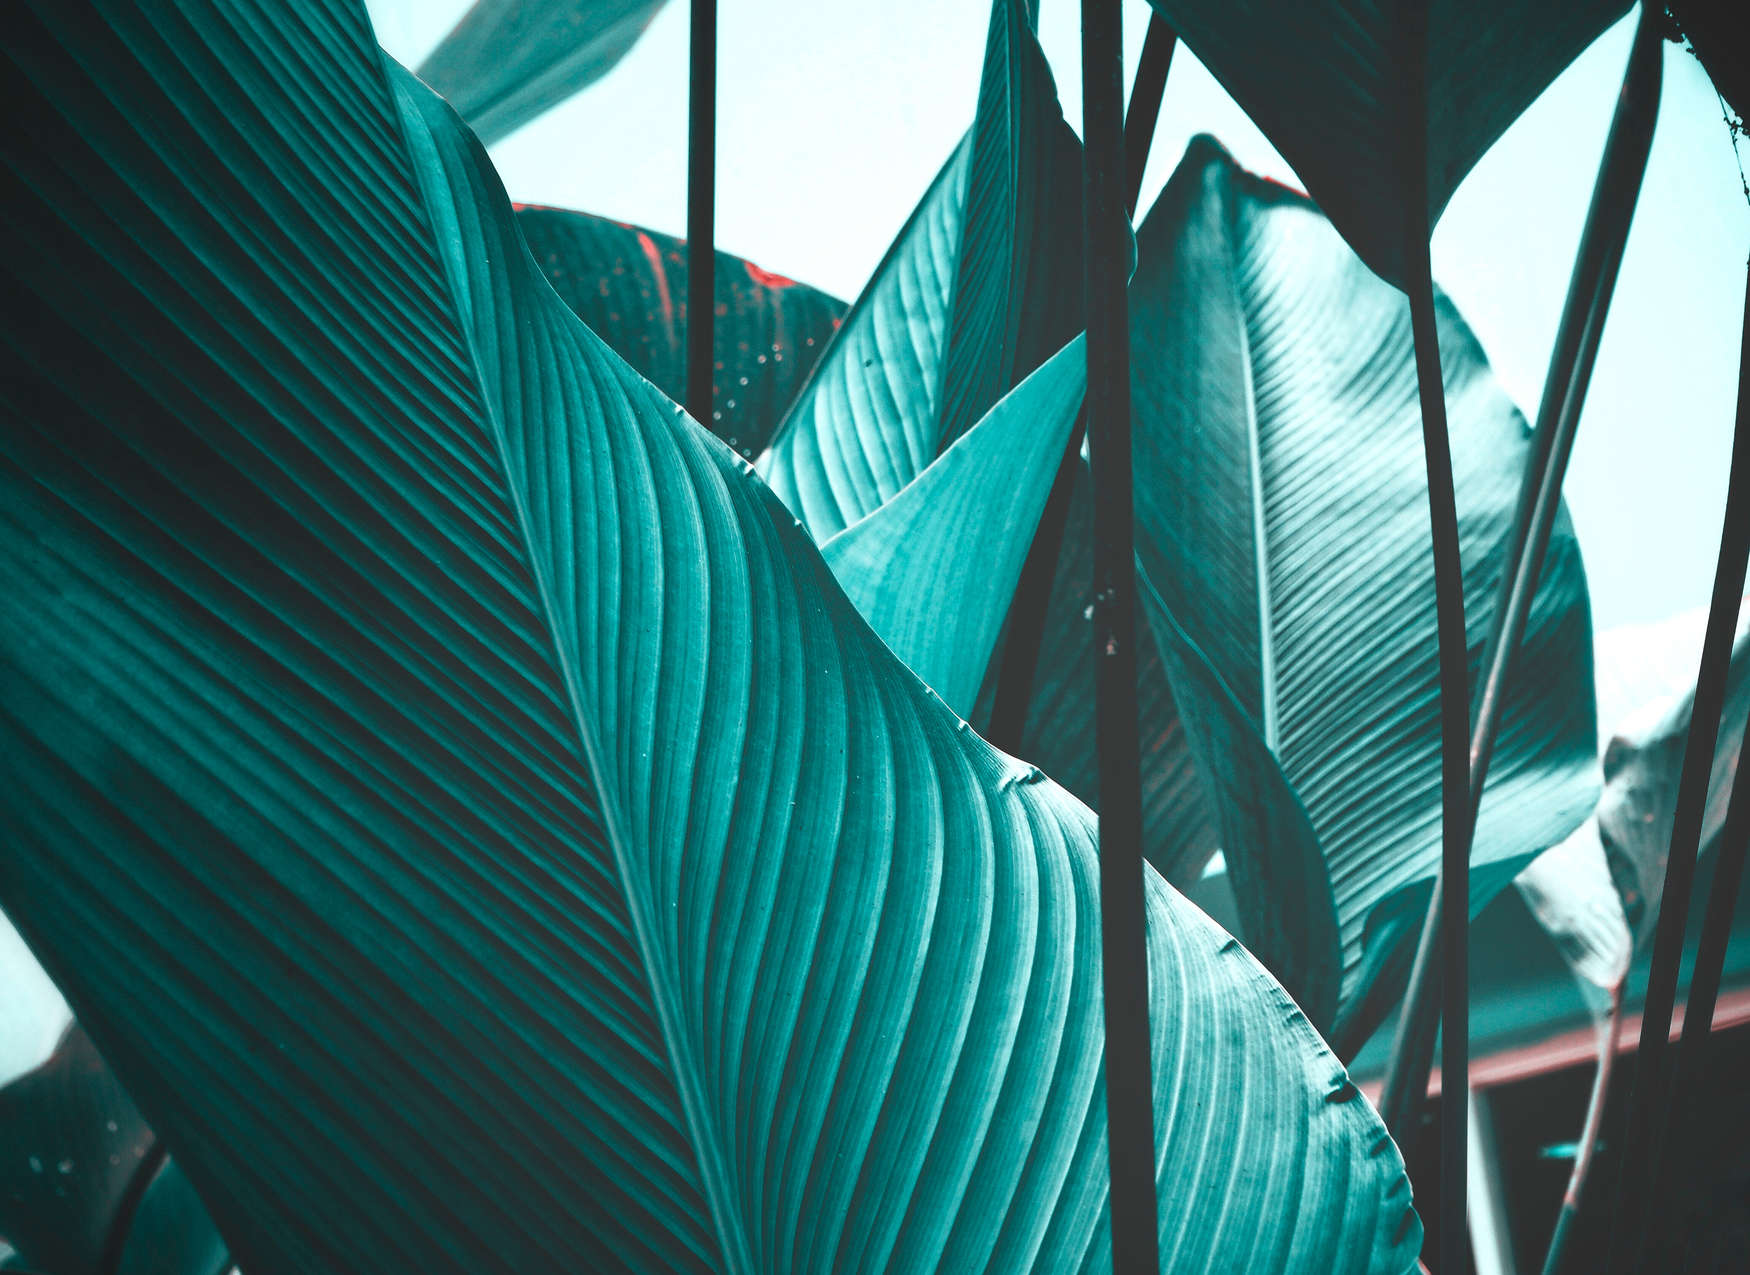             Fototapete Blätter tropisch Türkis – Blau, Schwarz
        